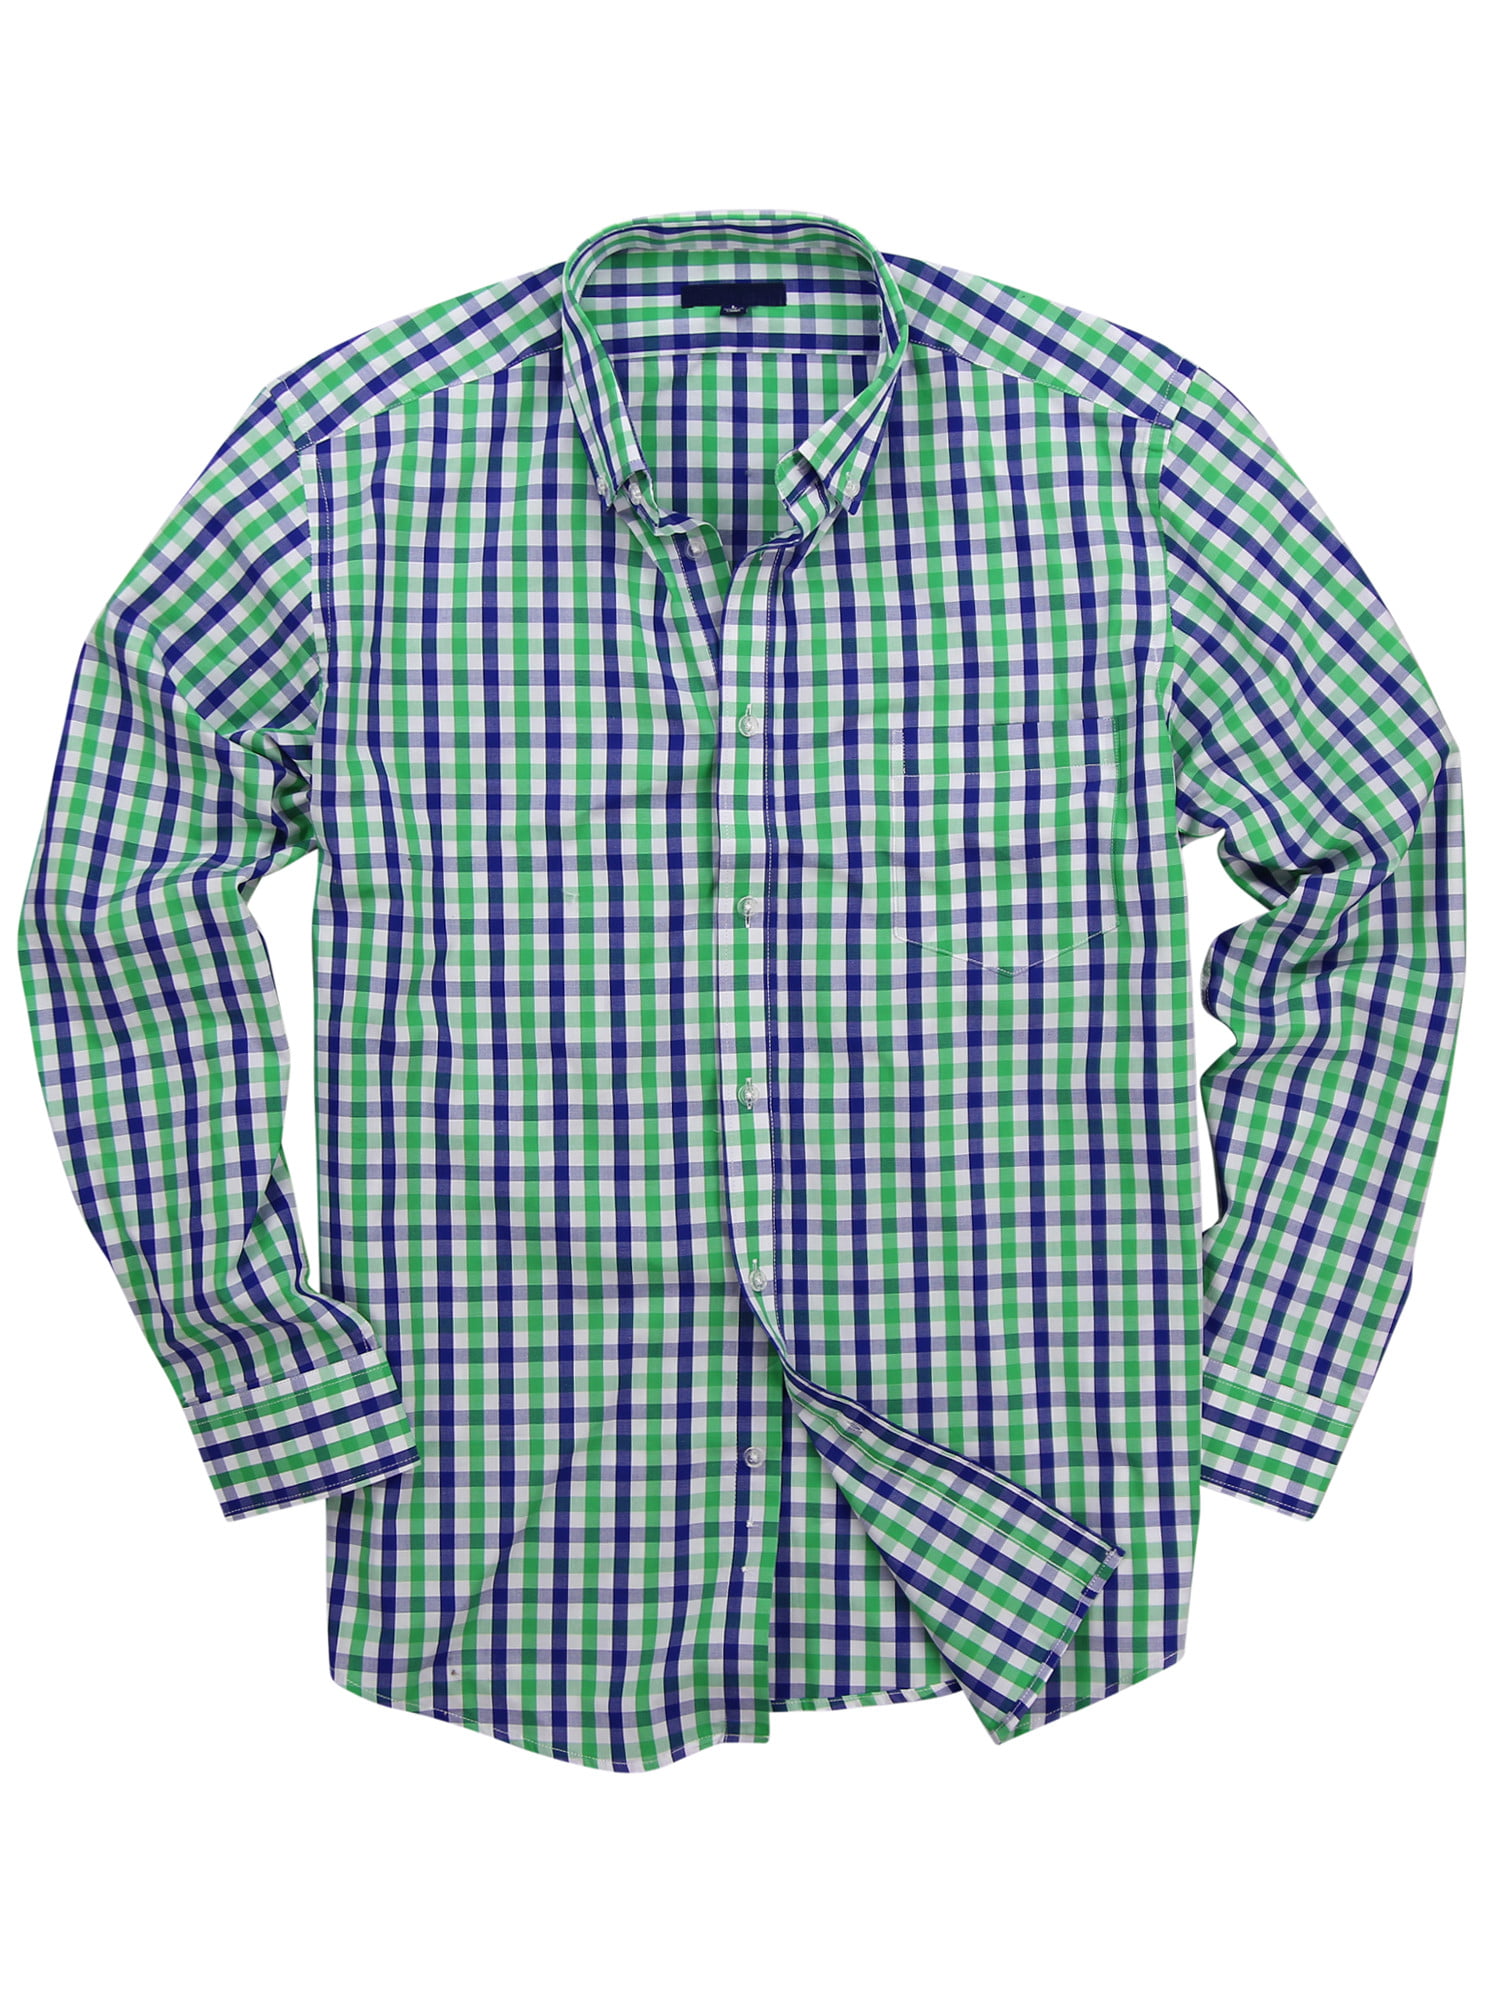 Homyl Mens 100% Cotton Standard Fit Long Sleeve Button-Down Lightweight Plaid Shirt 